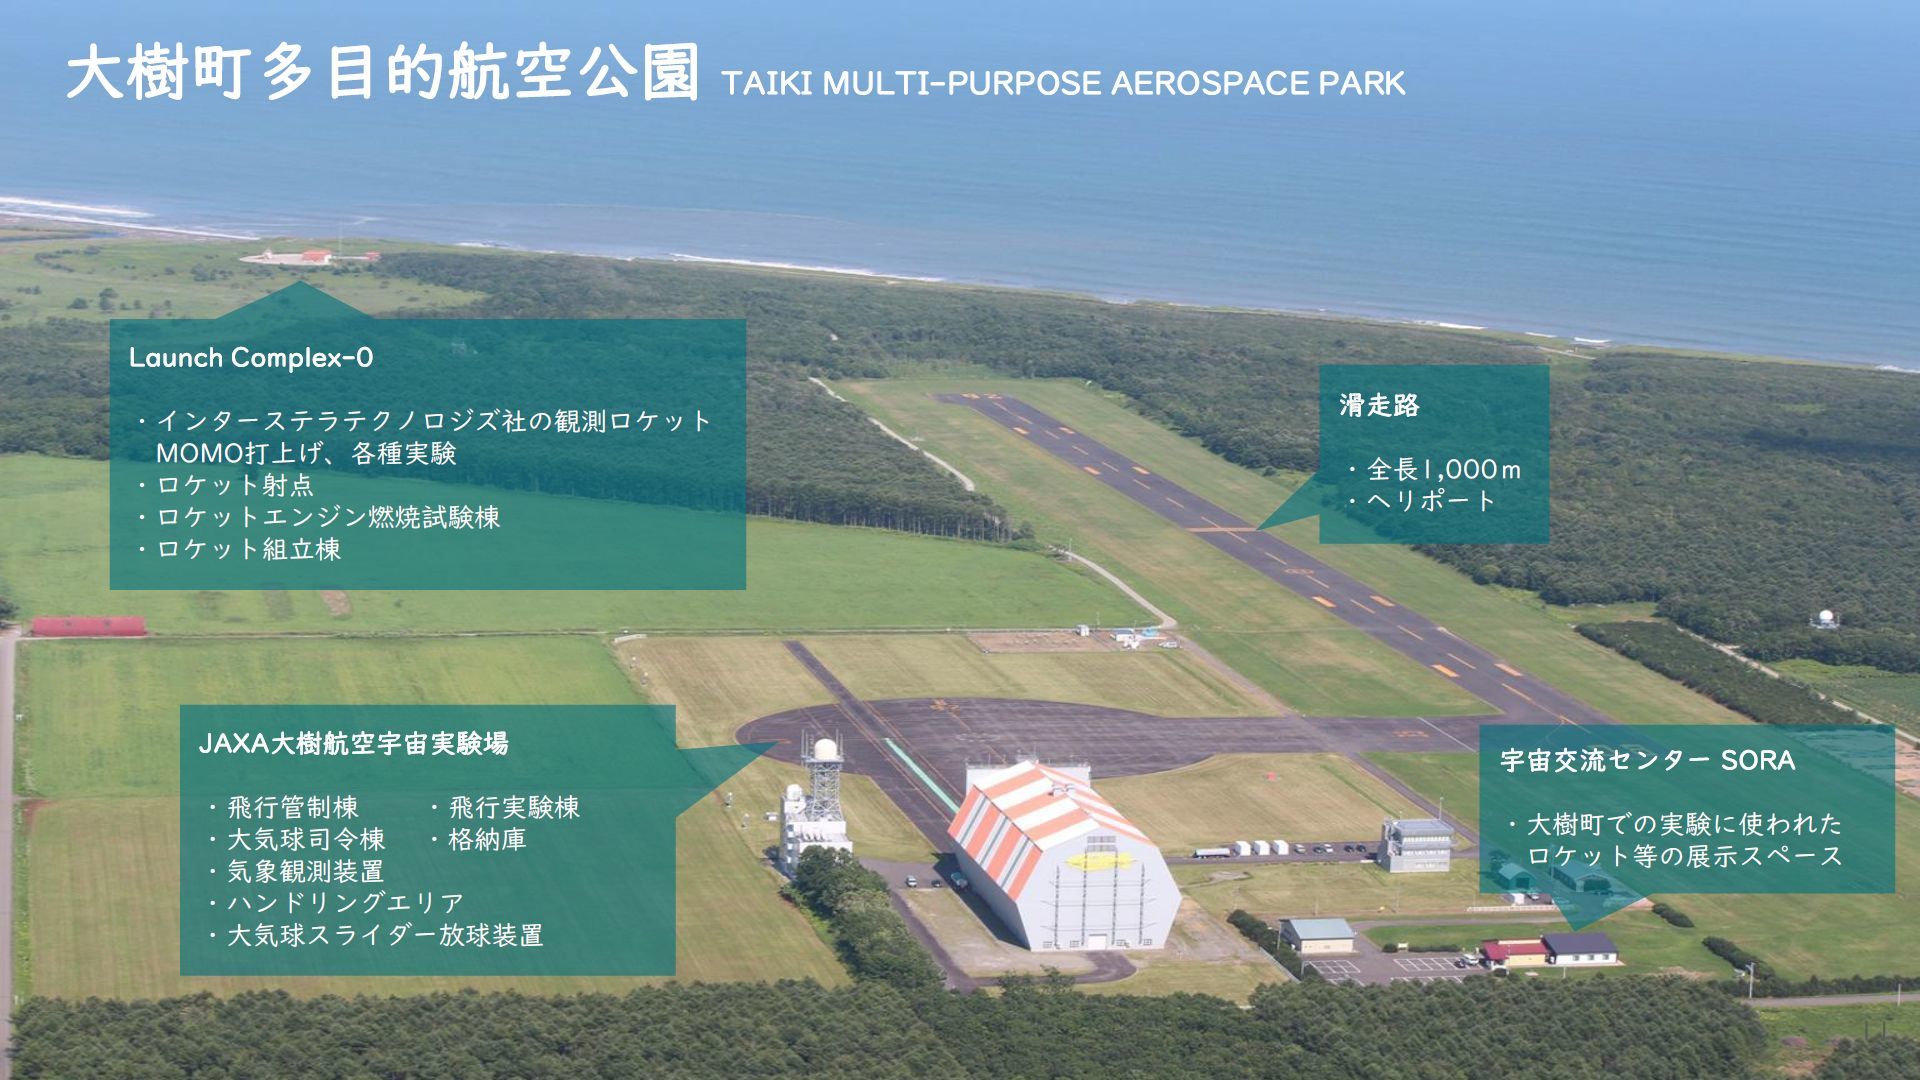 目指すは“宇宙版シリコンバレー”、アジア初の宇宙港を北海道で実現せよ